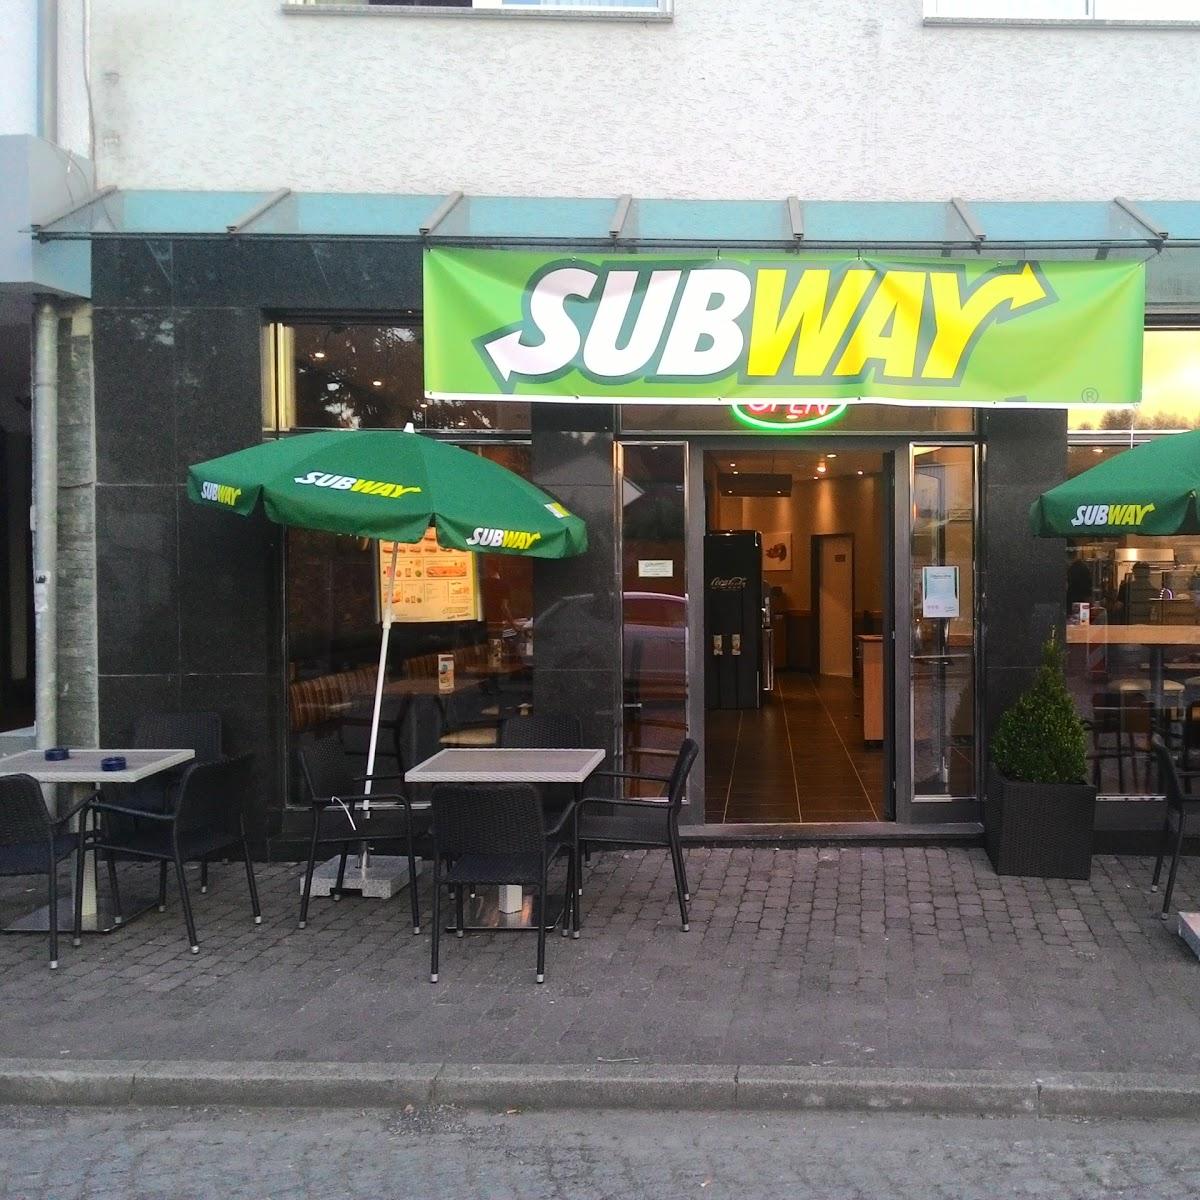 Restaurant "Subway" in Schwalmstadt